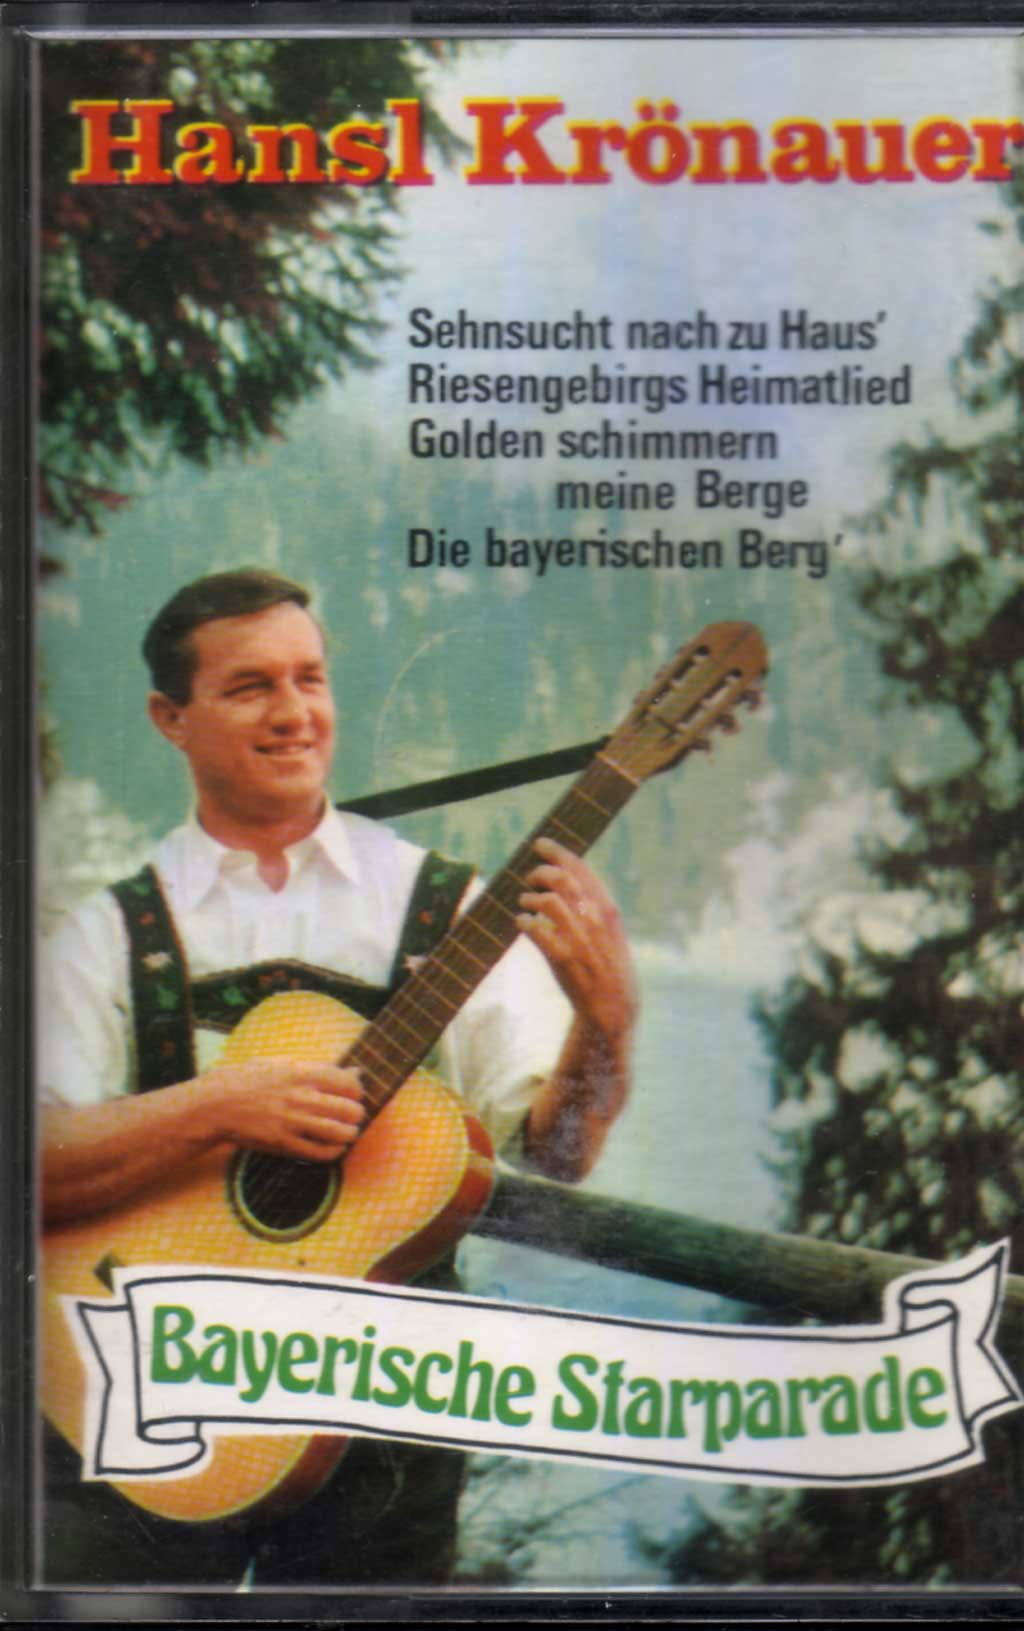 Musikkassette mit Bayerischer Starparade